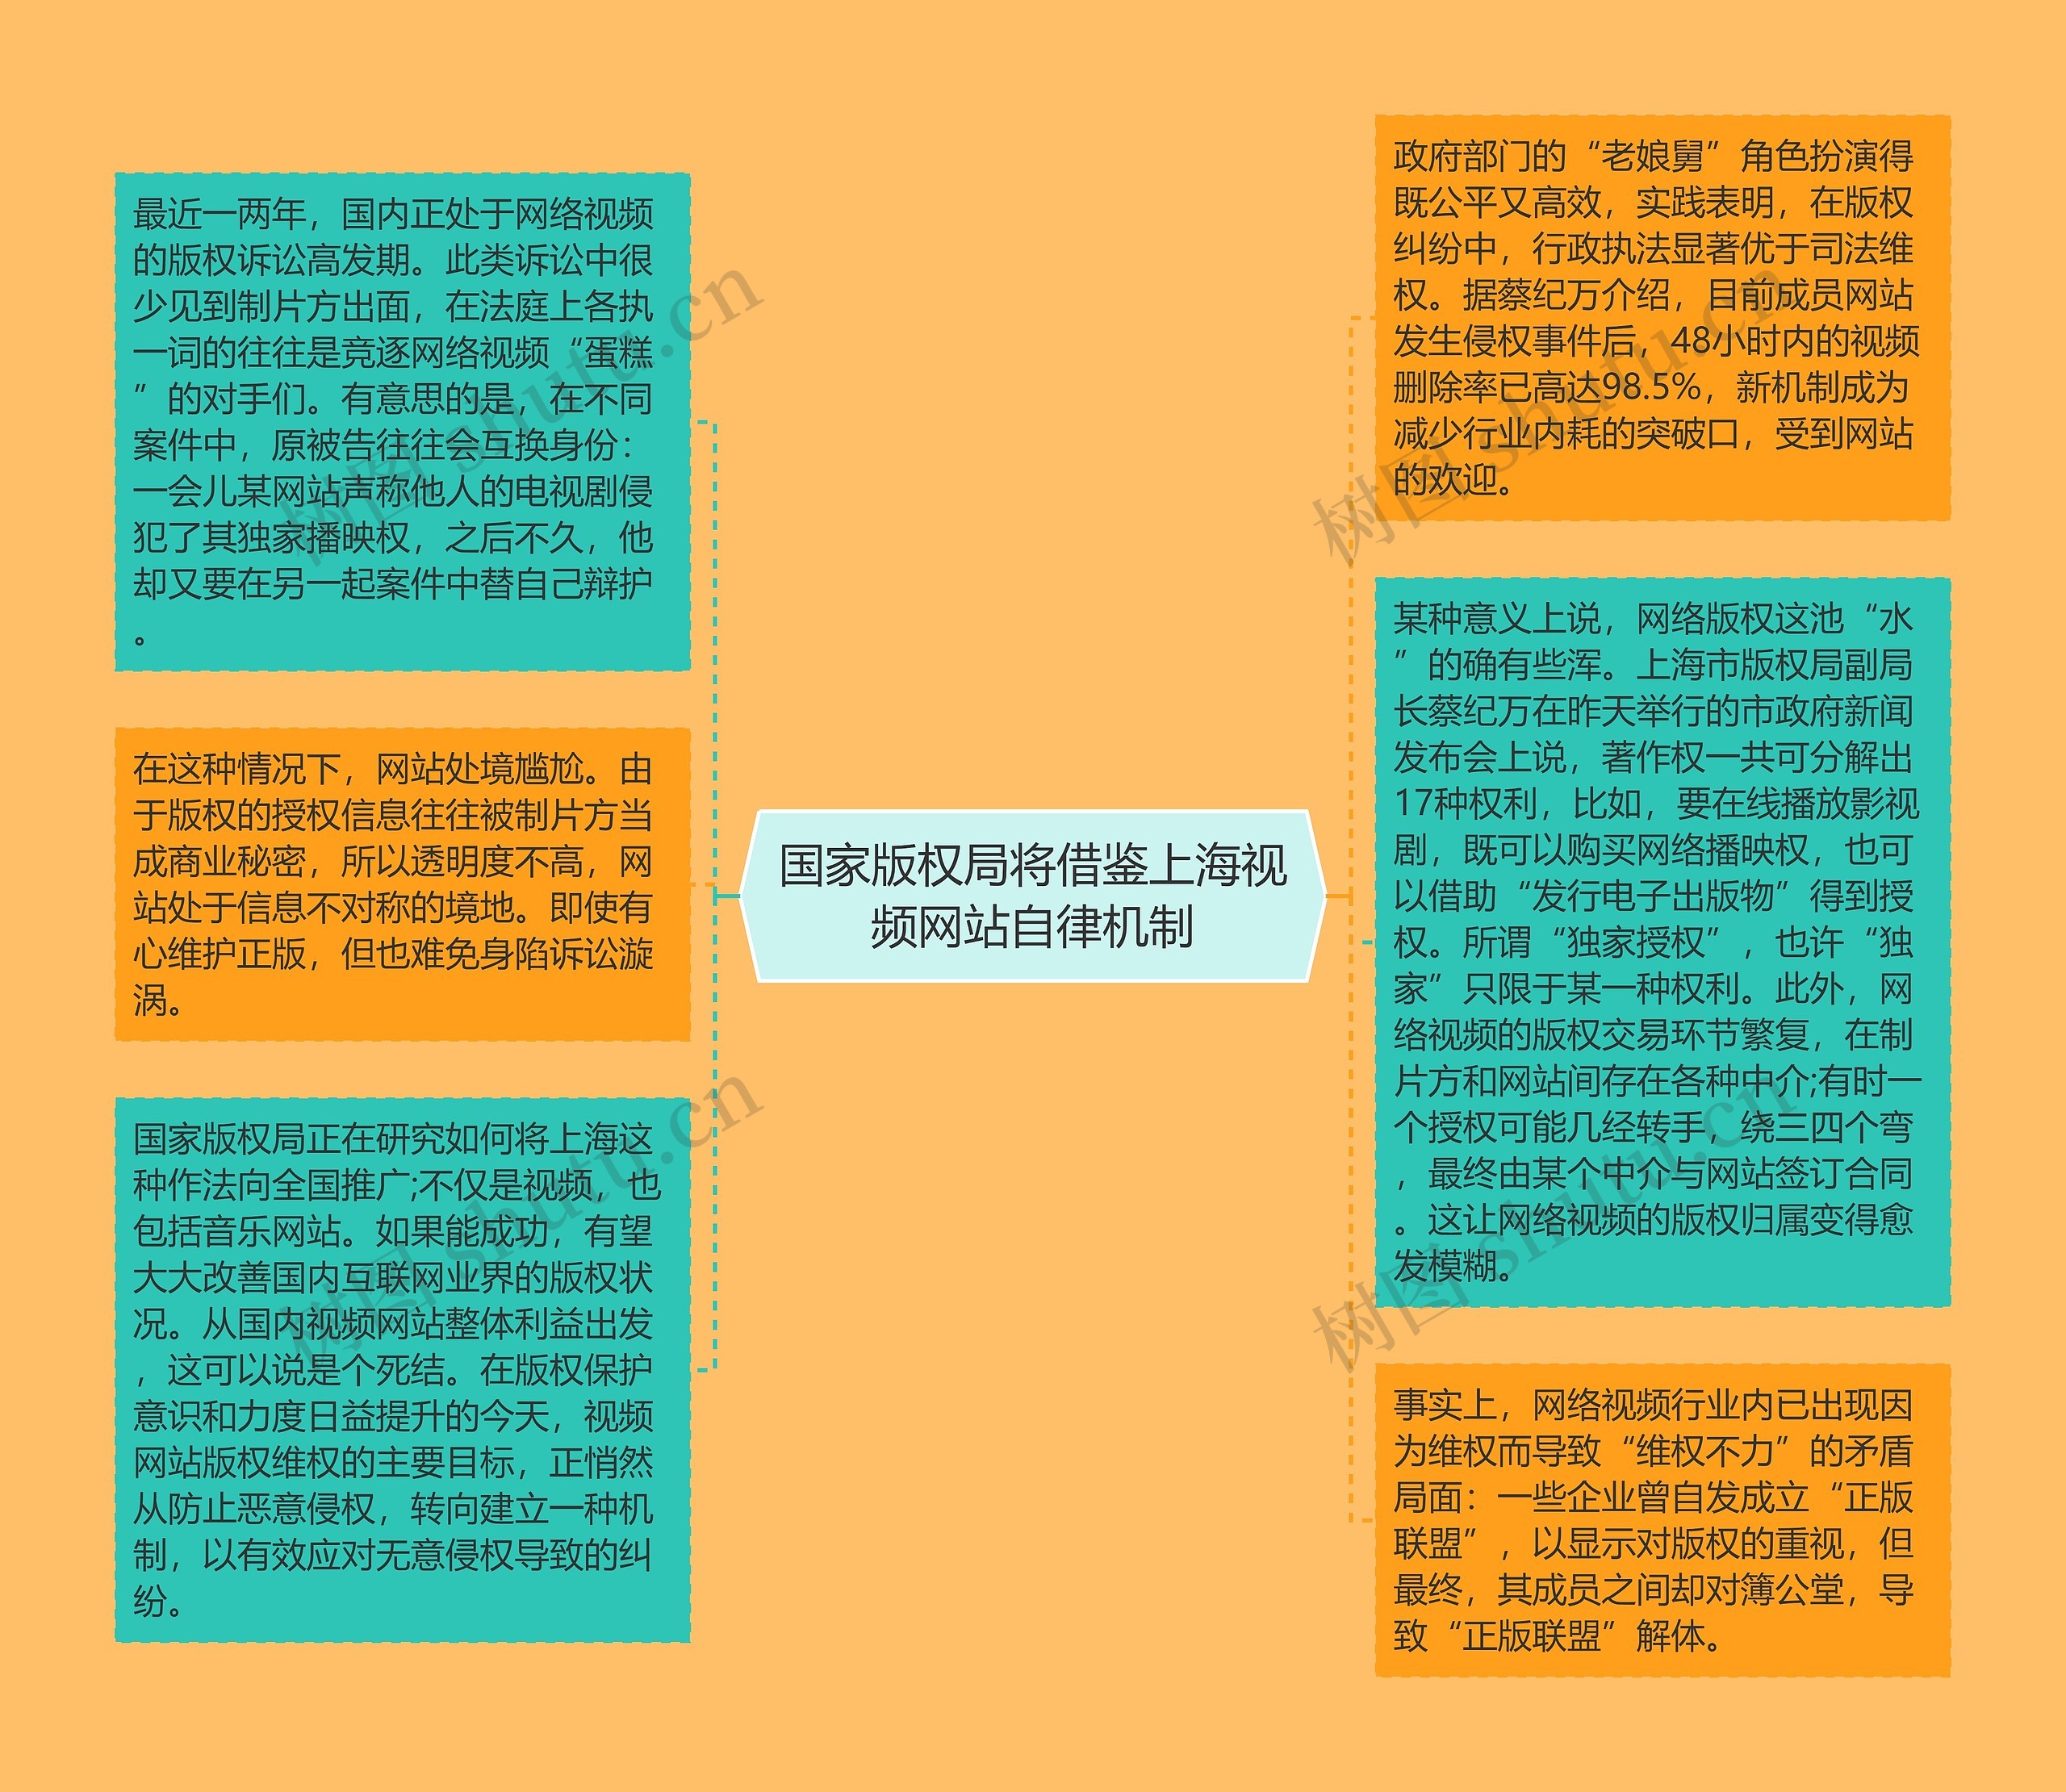 国家版权局将借鉴上海视频网站自律机制